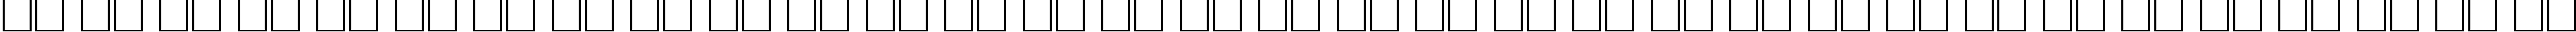 Пример написания русского алфавита шрифтом Optima